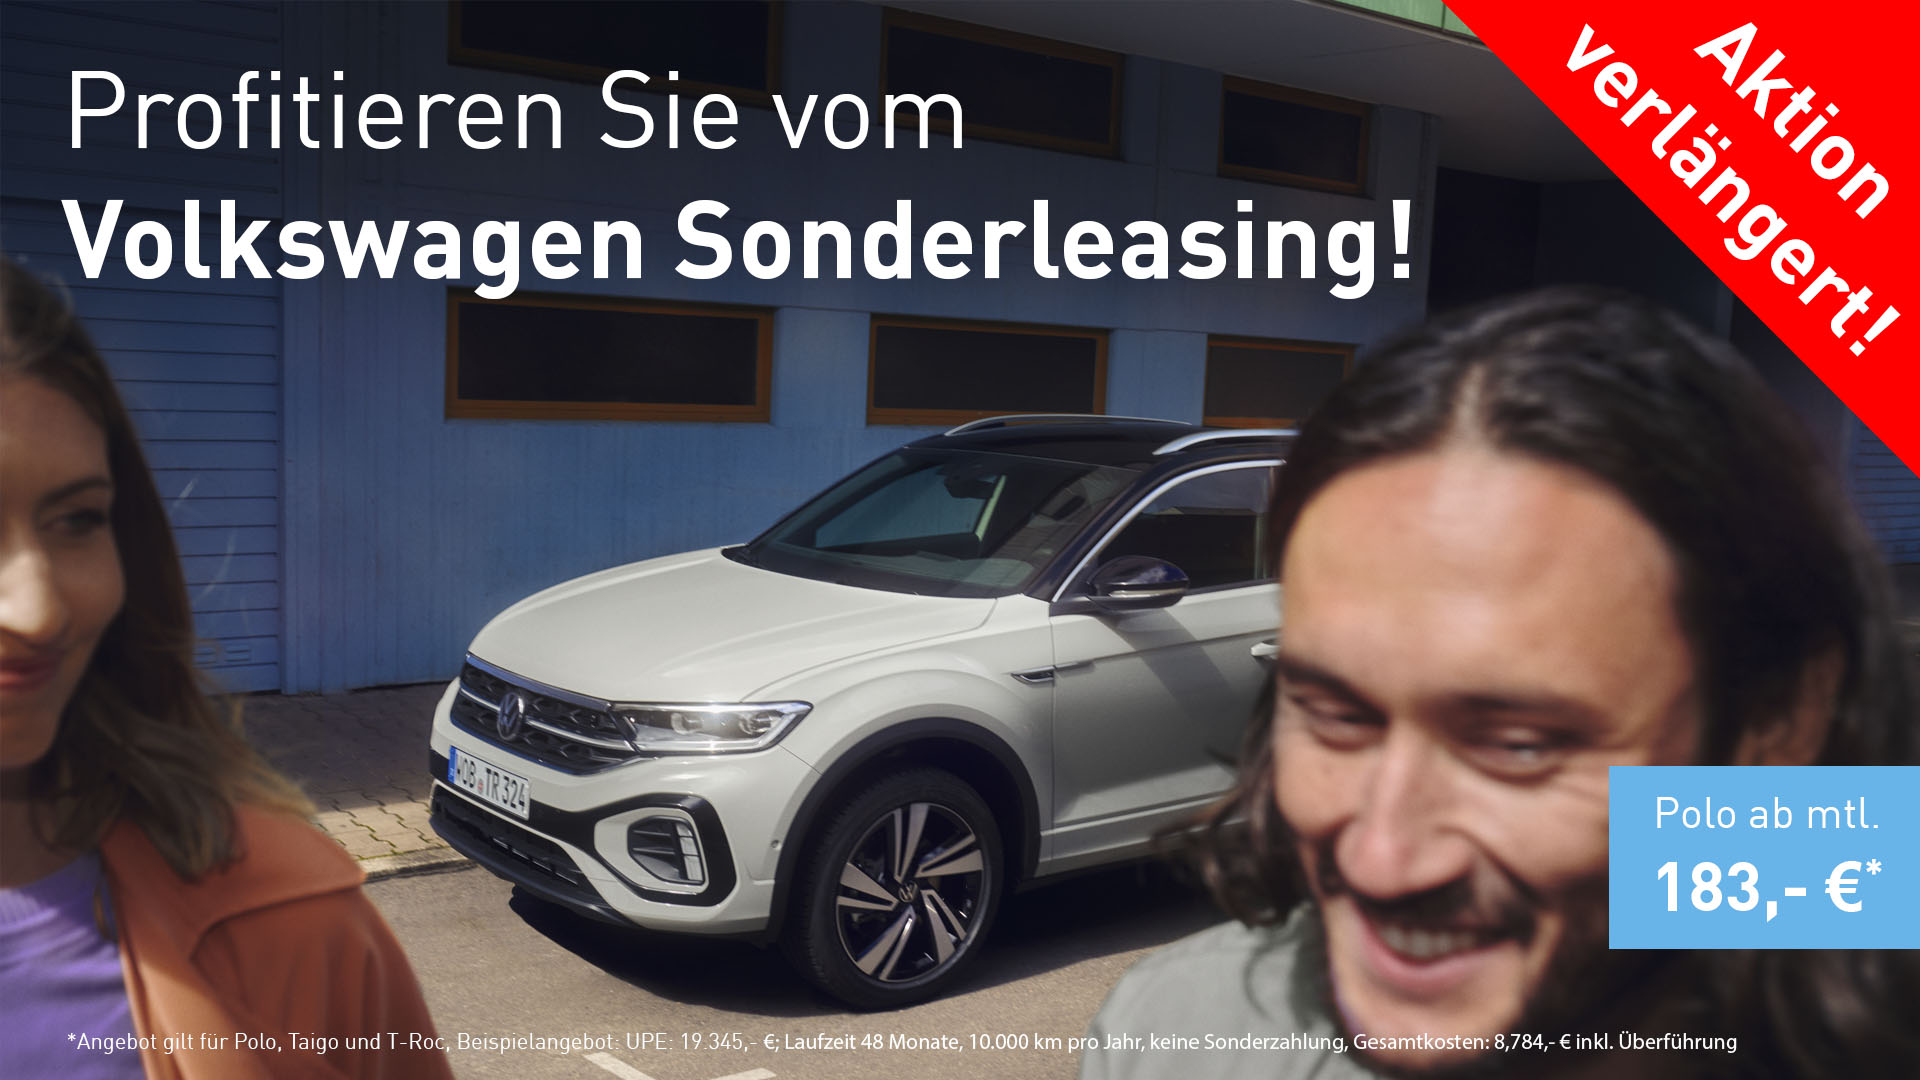 Profitieren Sie vom Volkswagen Sonderleasing!